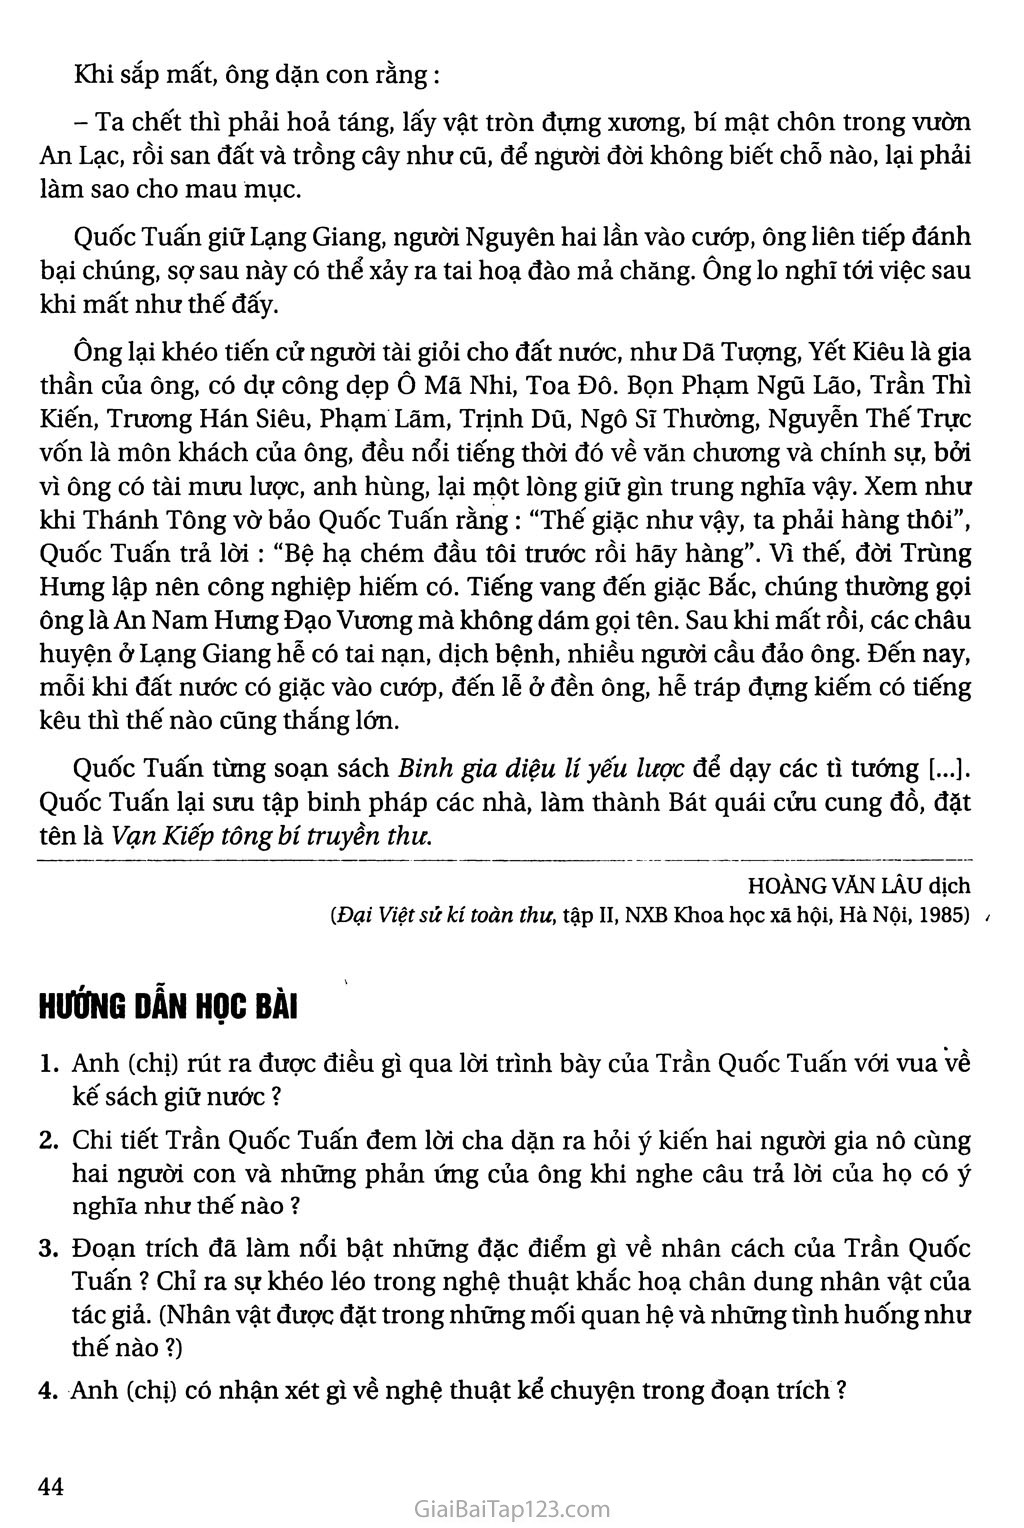 Hưng Đạo Đại Vương Trần Quốc Tuấn (trích Đại Việt sử kí toàn thư) trang 4